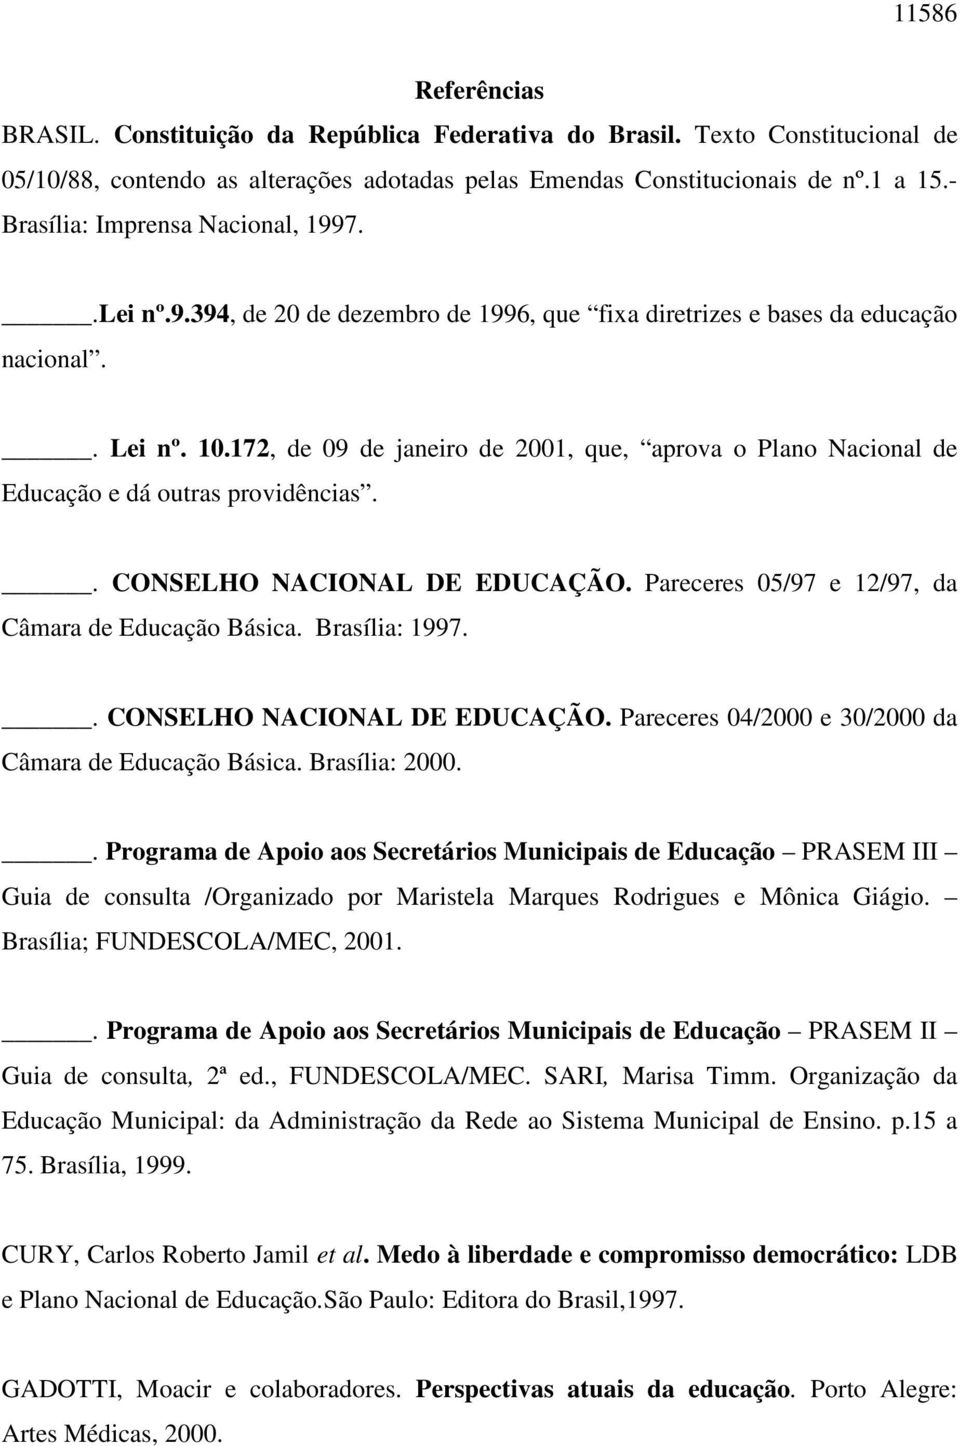 172, de 09 de janeiro de 2001, que, aprova o Plano Nacional de Educação e dá outras providências.. CONSELHO NACIONAL DE EDUCAÇÃO. Pareceres 05/97 e 12/97, da Câmara de Educação Básica. Brasília: 1997.